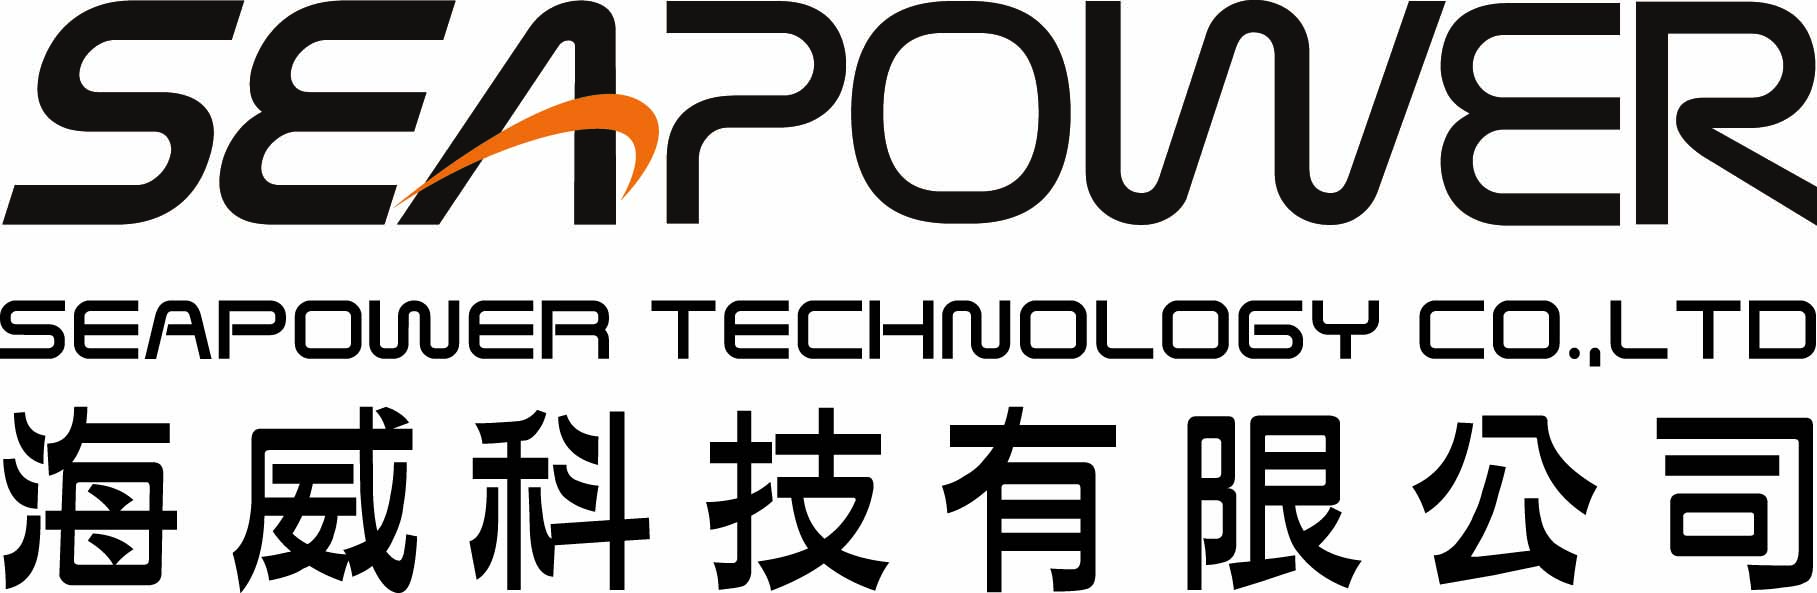 SeaPower Technology CO., LTD